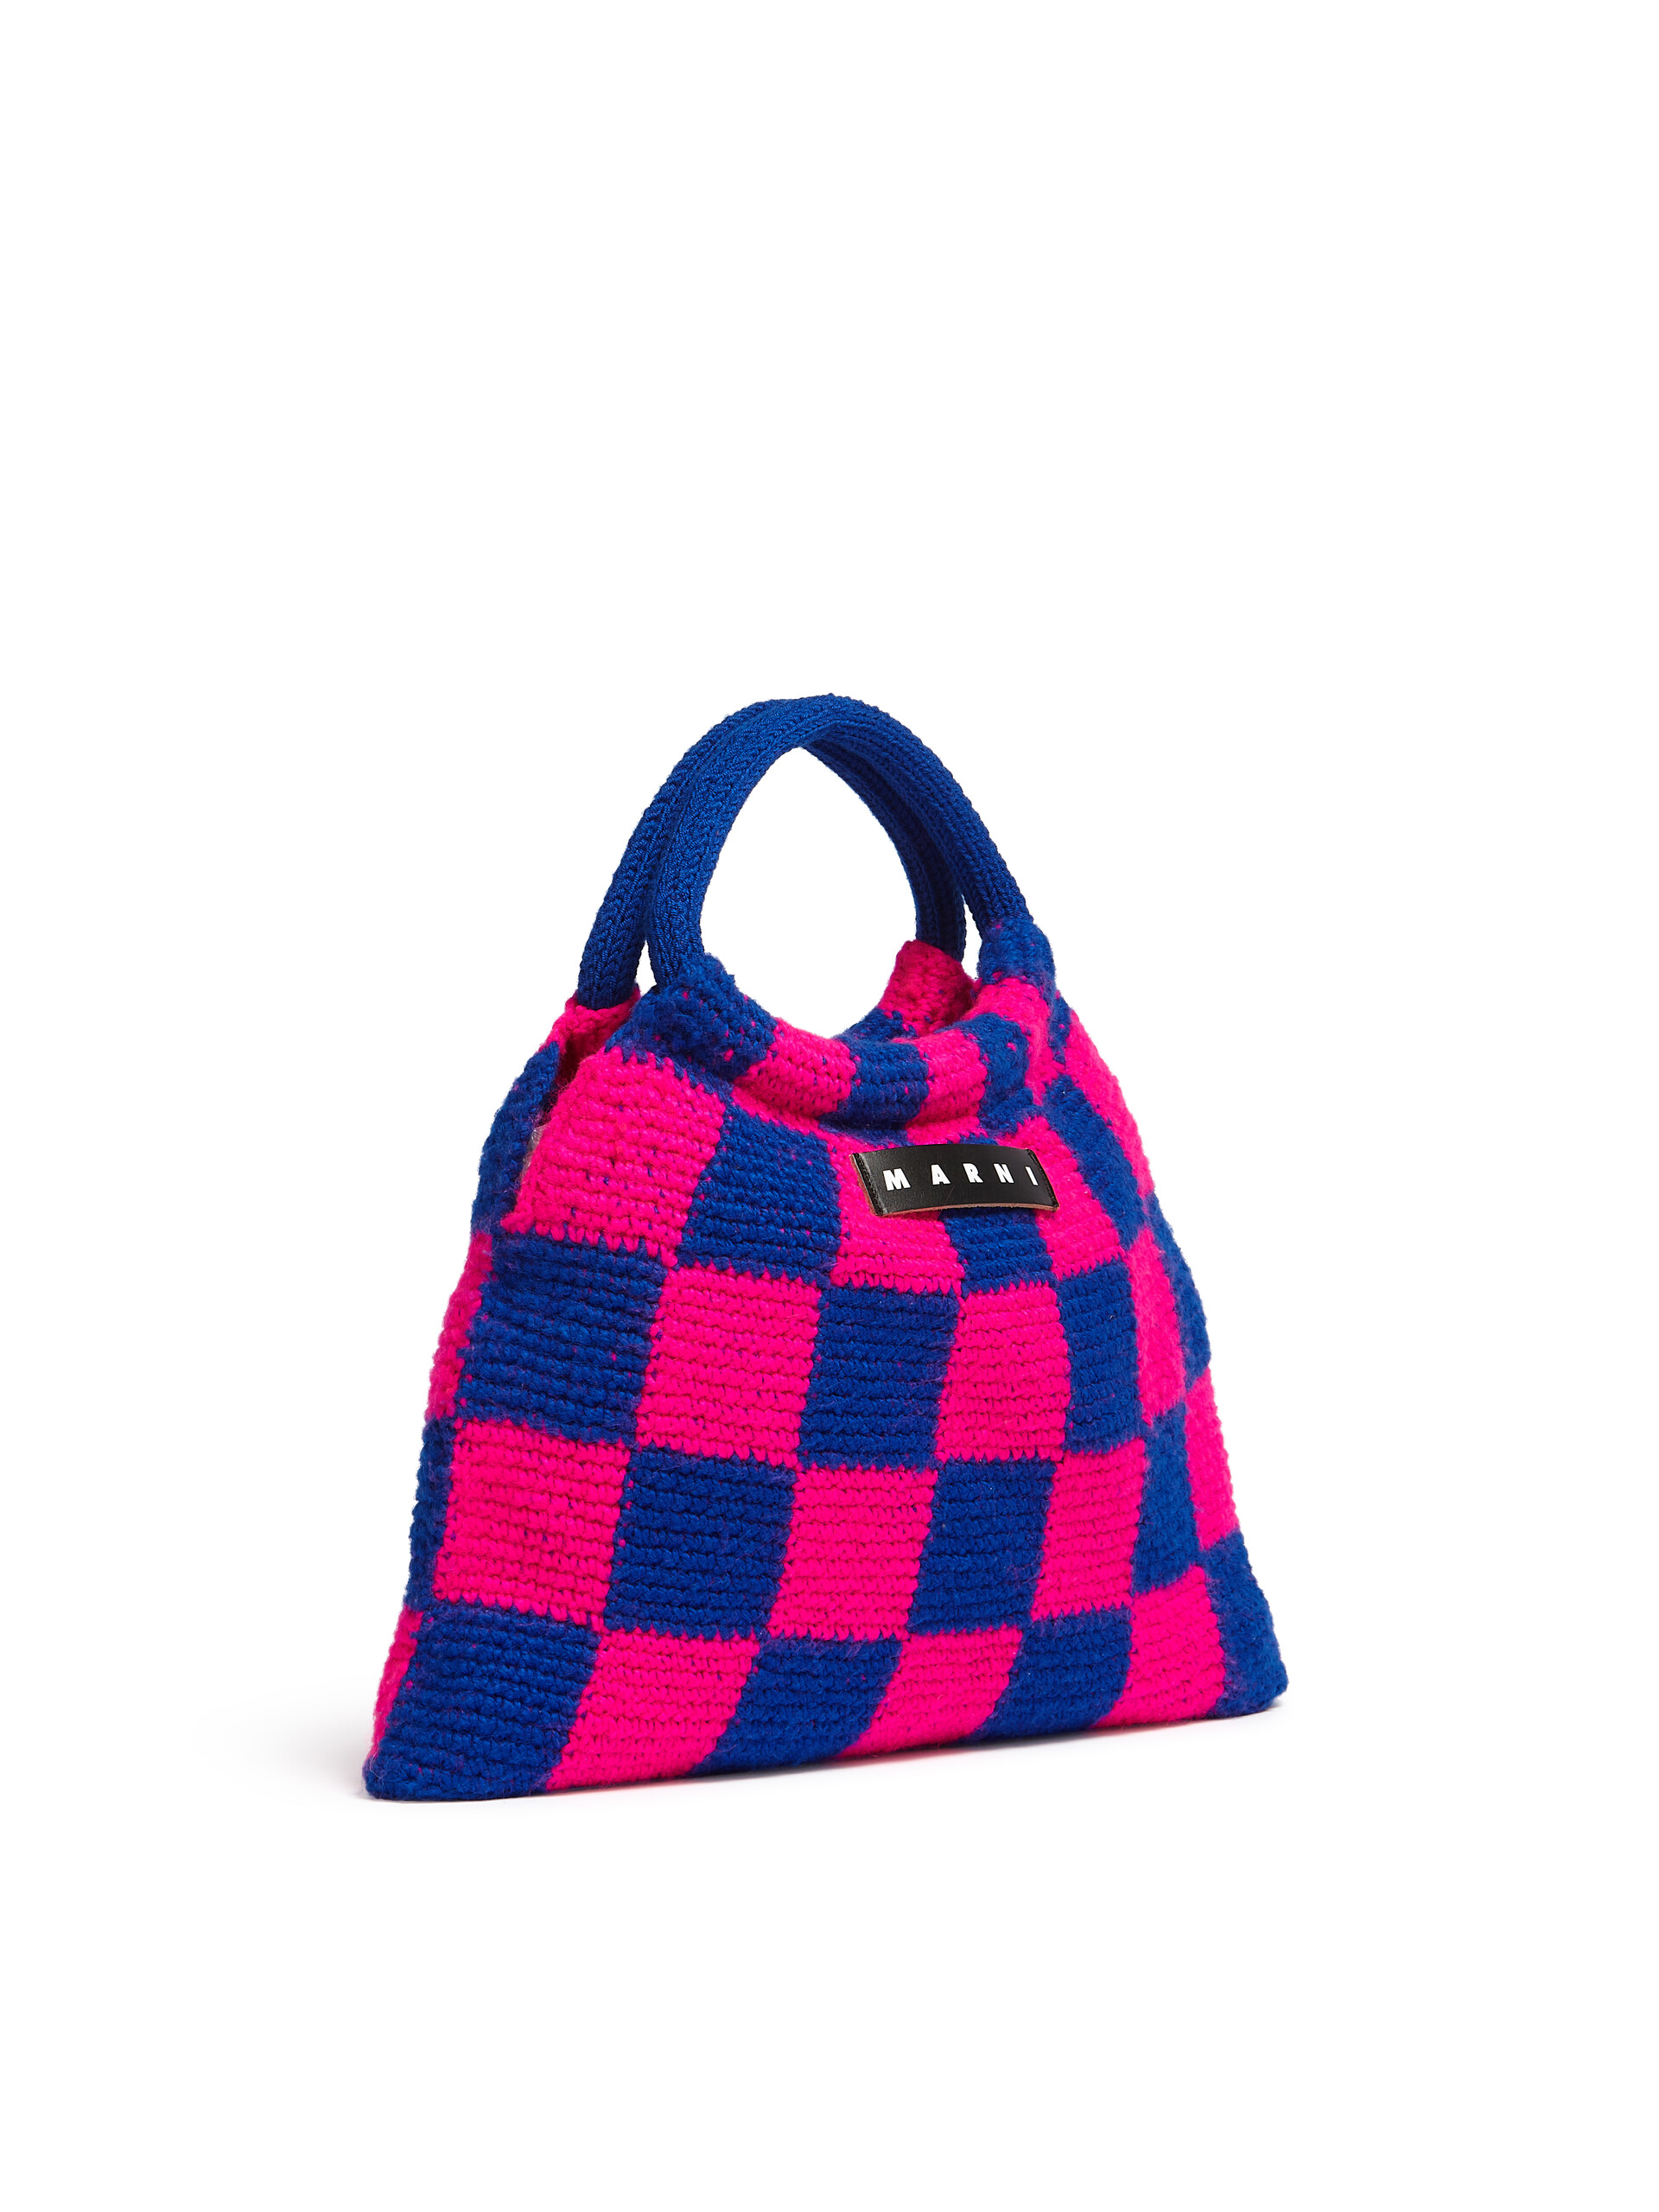 Sac MARNI MARKET GRANNY rose et bleu réalisé au crochet - Sacs cabas - Image 2